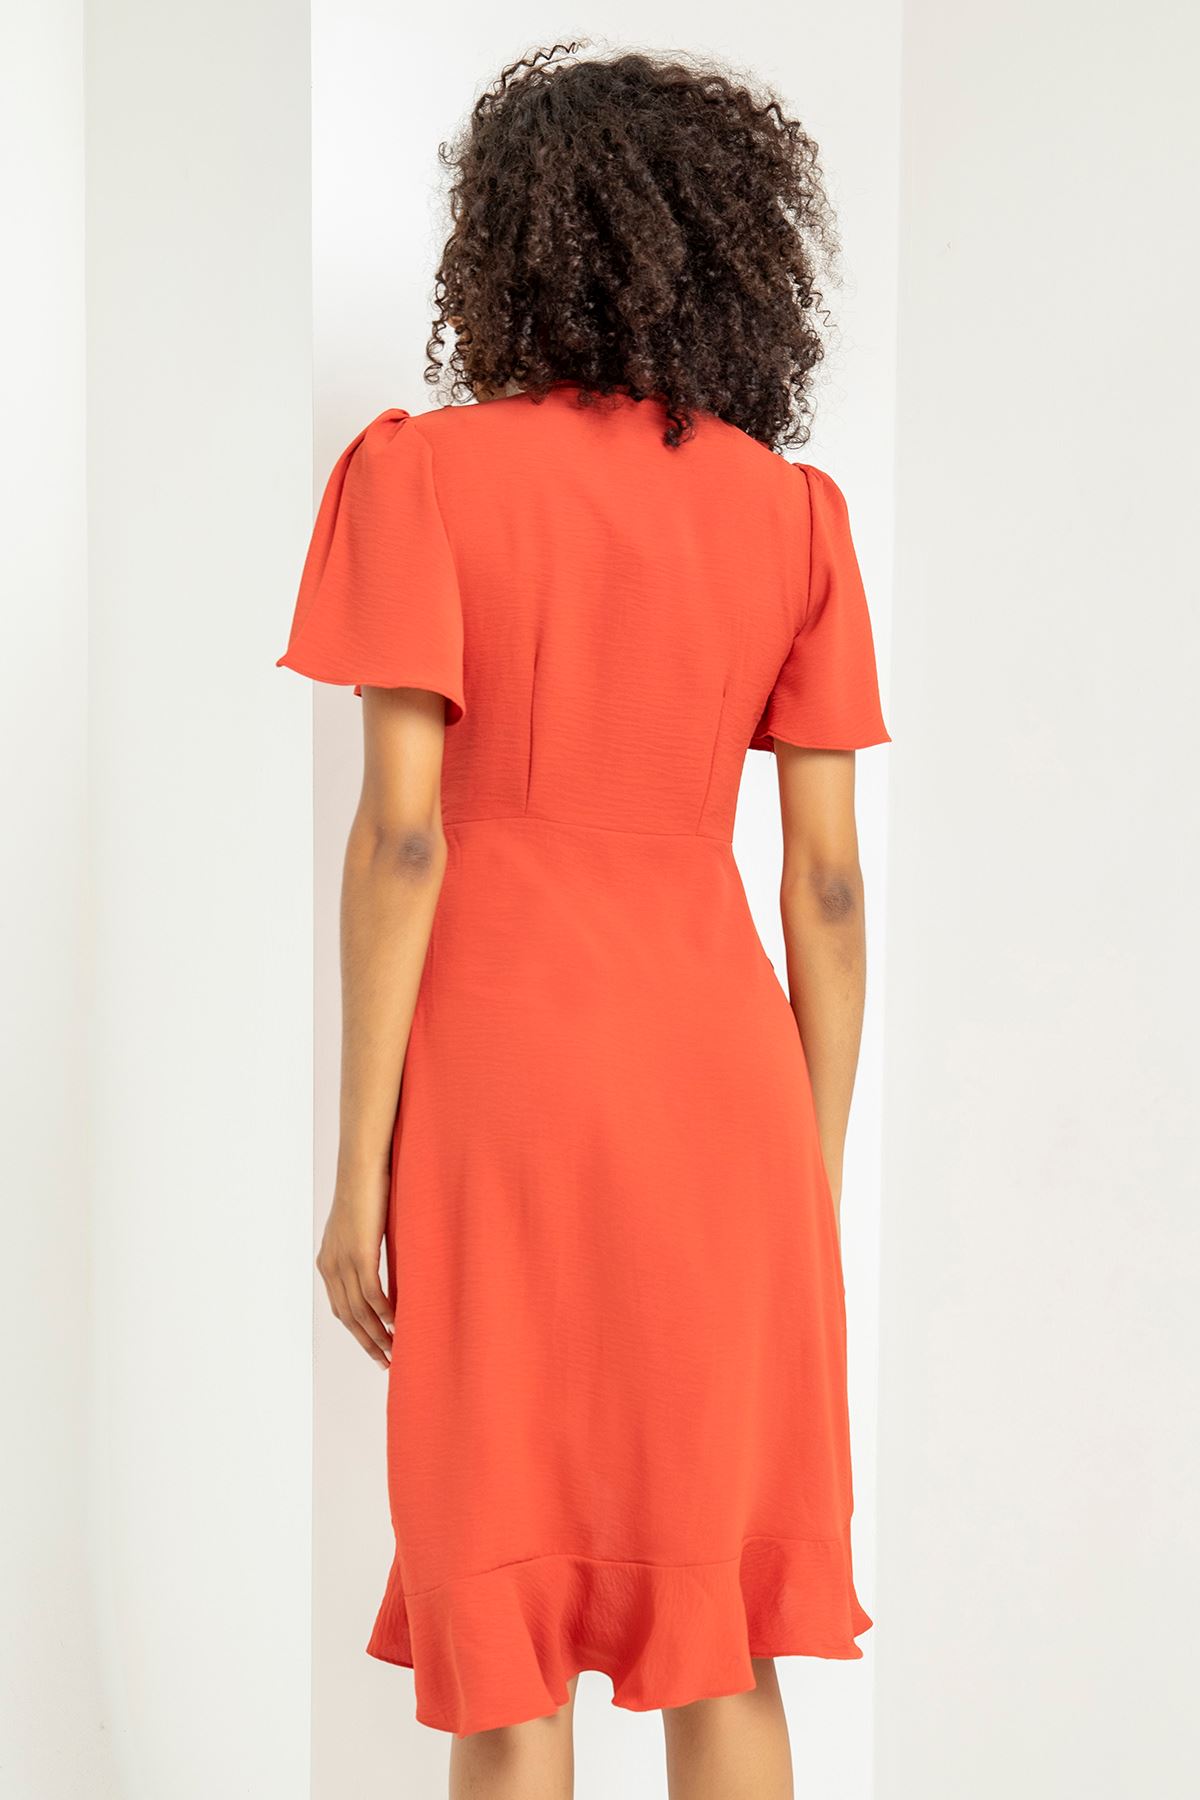 Аэробин Ткань воротник с воланами средний длины женское платье - Оранжевый